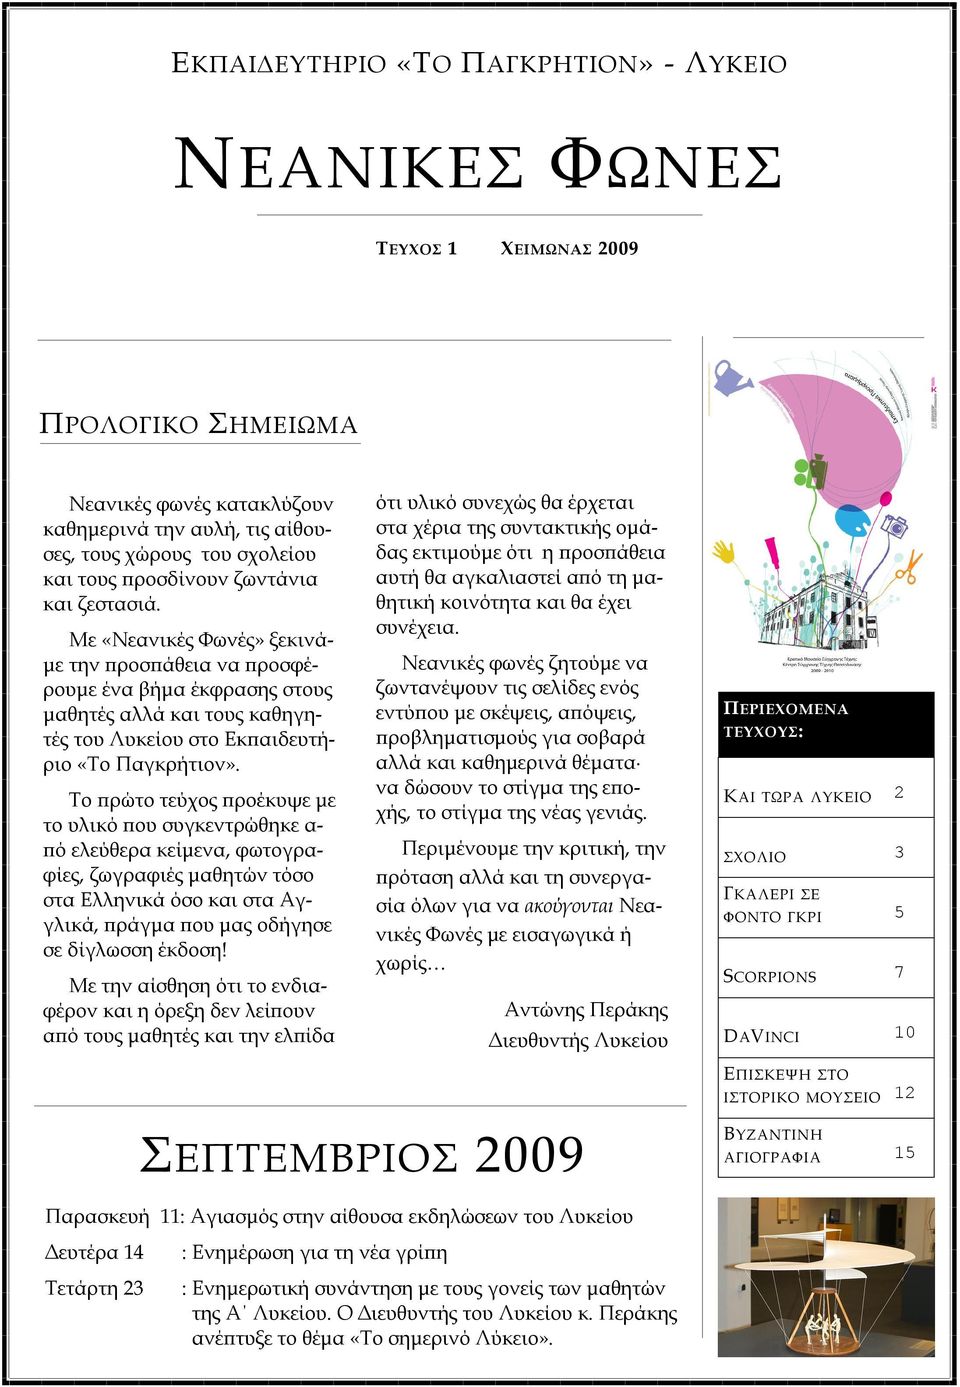 Το πρώτο τεύχος προέκυψε με το υλικό που συγκεντρώθηκε α- πό ελεύθερα κείμενα, φωτογραφίες, ζωγραφιές μαθητών τόσο στα Ελληνικά όσο και στα Αγγλικά, πράγμα που μας οδήγησε σε δίγλωσση έκδοση!